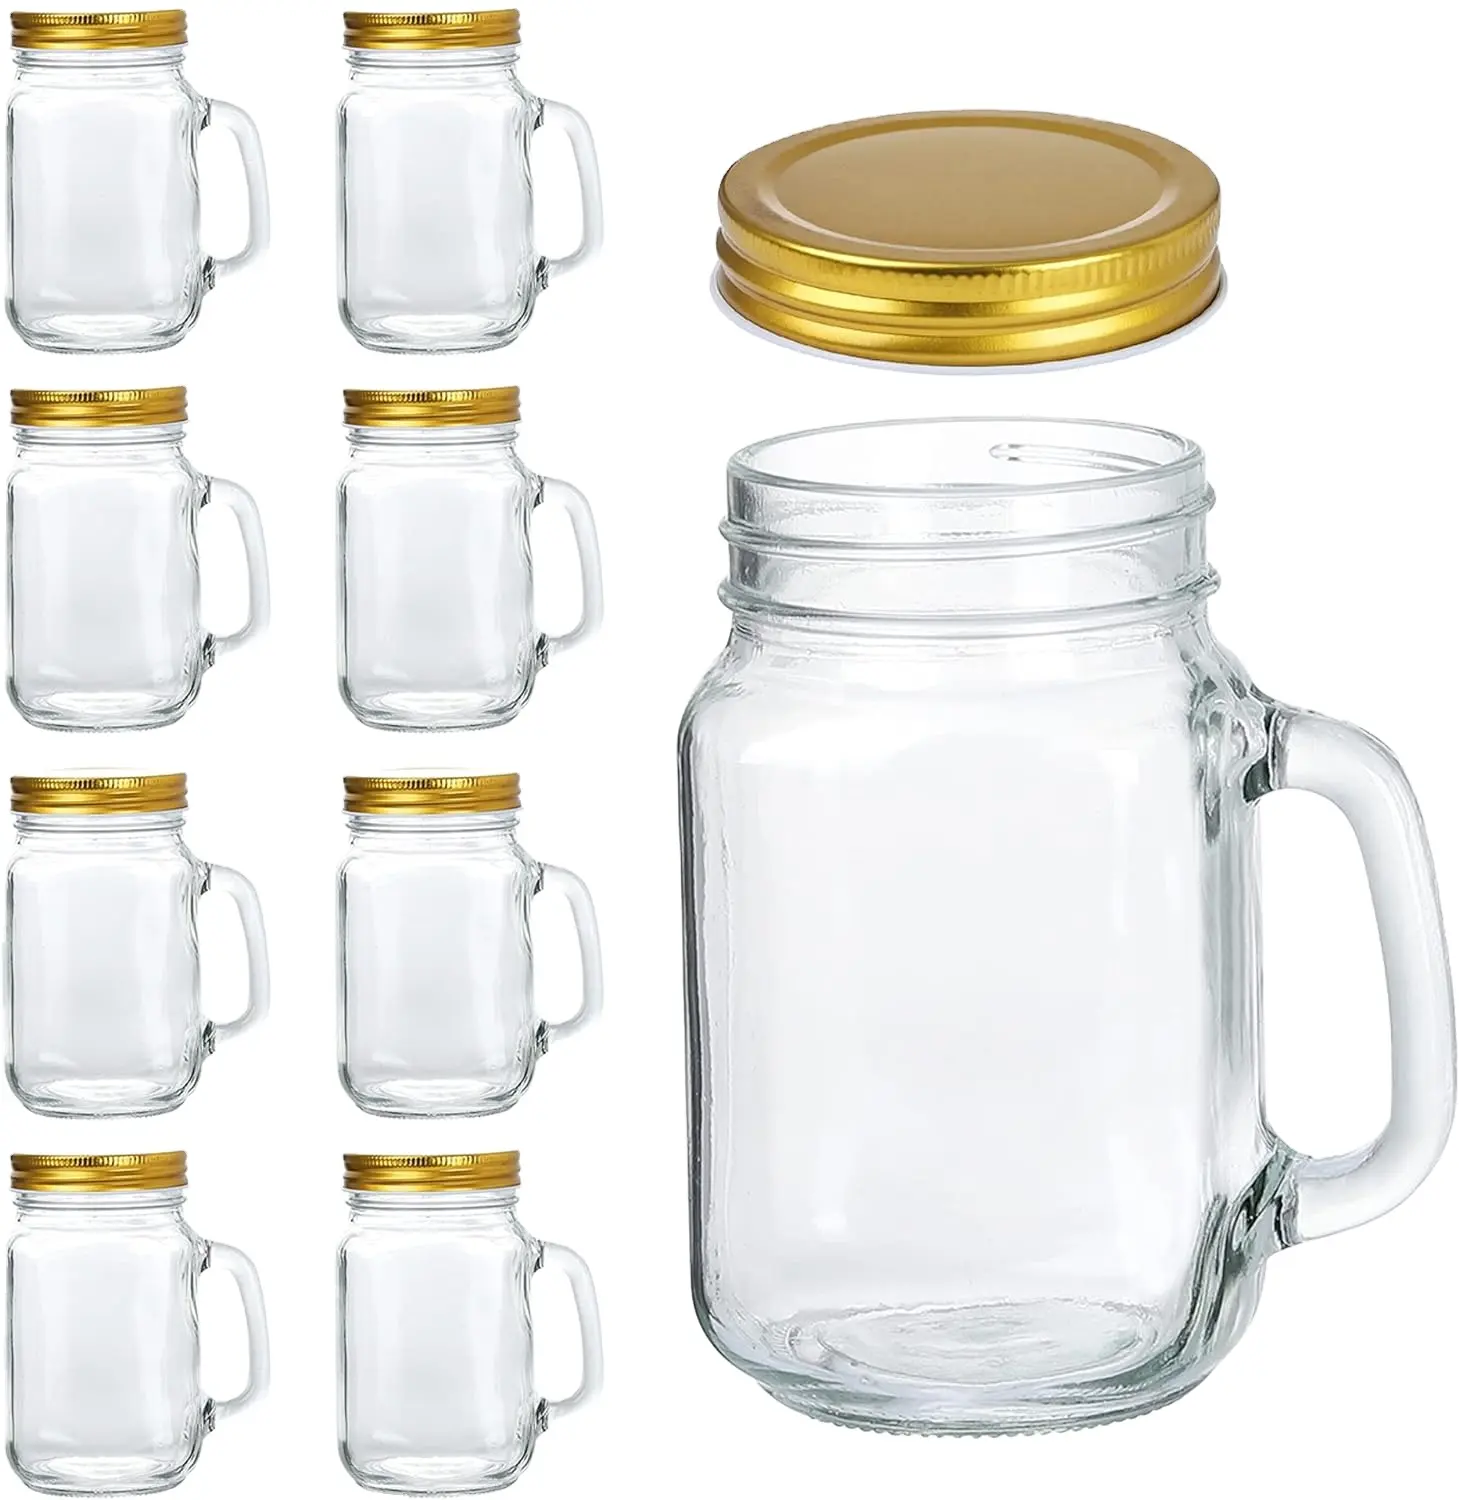 16oz barattoli di vetro tazza con manici, 480ml vecchio stile barattoli di vetro con coperchi dorati per la festa